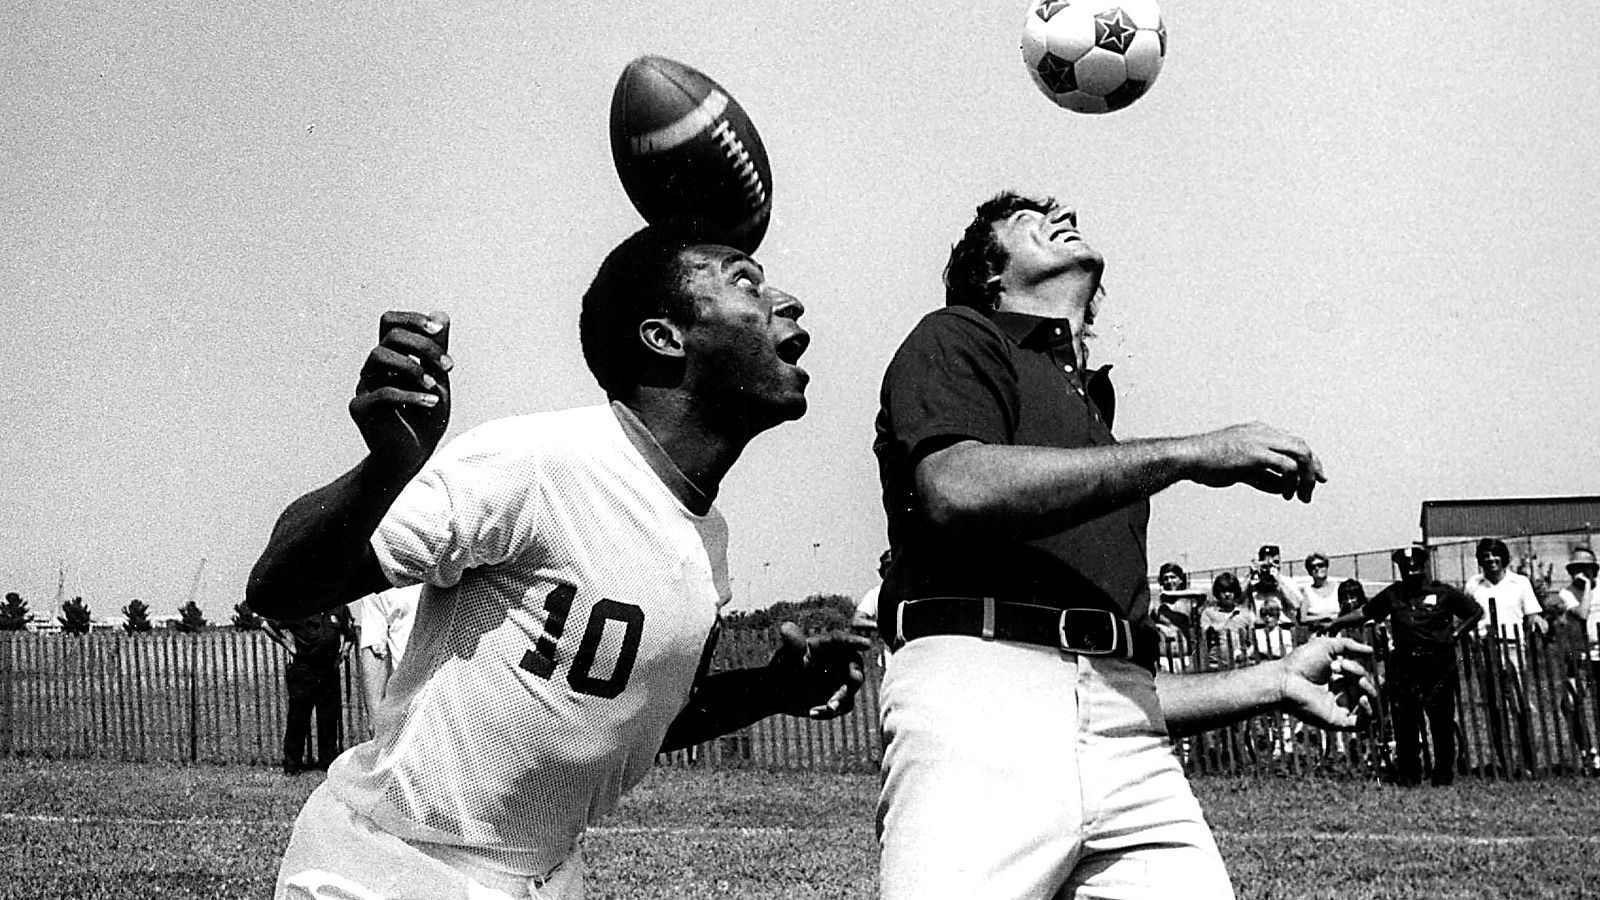 <strong>1972: Brasiliens Fußball-Legende Pele lehnte NFL-Angebot ab</strong><br>Bei einem Treffen im Jahr 1972 bekam die brasilianische Fußball-Legende Pele, damals beim FC Santos unter Vertrag, laut "Blick" ein verlockendes Angebot. Joe Namath, damaliger Star-Quarterback der New York Jets, wollte Pele von einer NFL-Karriere überzeugen. Pele aber lehnte ab: "Ich kann keine Tore schießen, wenn ich einen Helm trage."